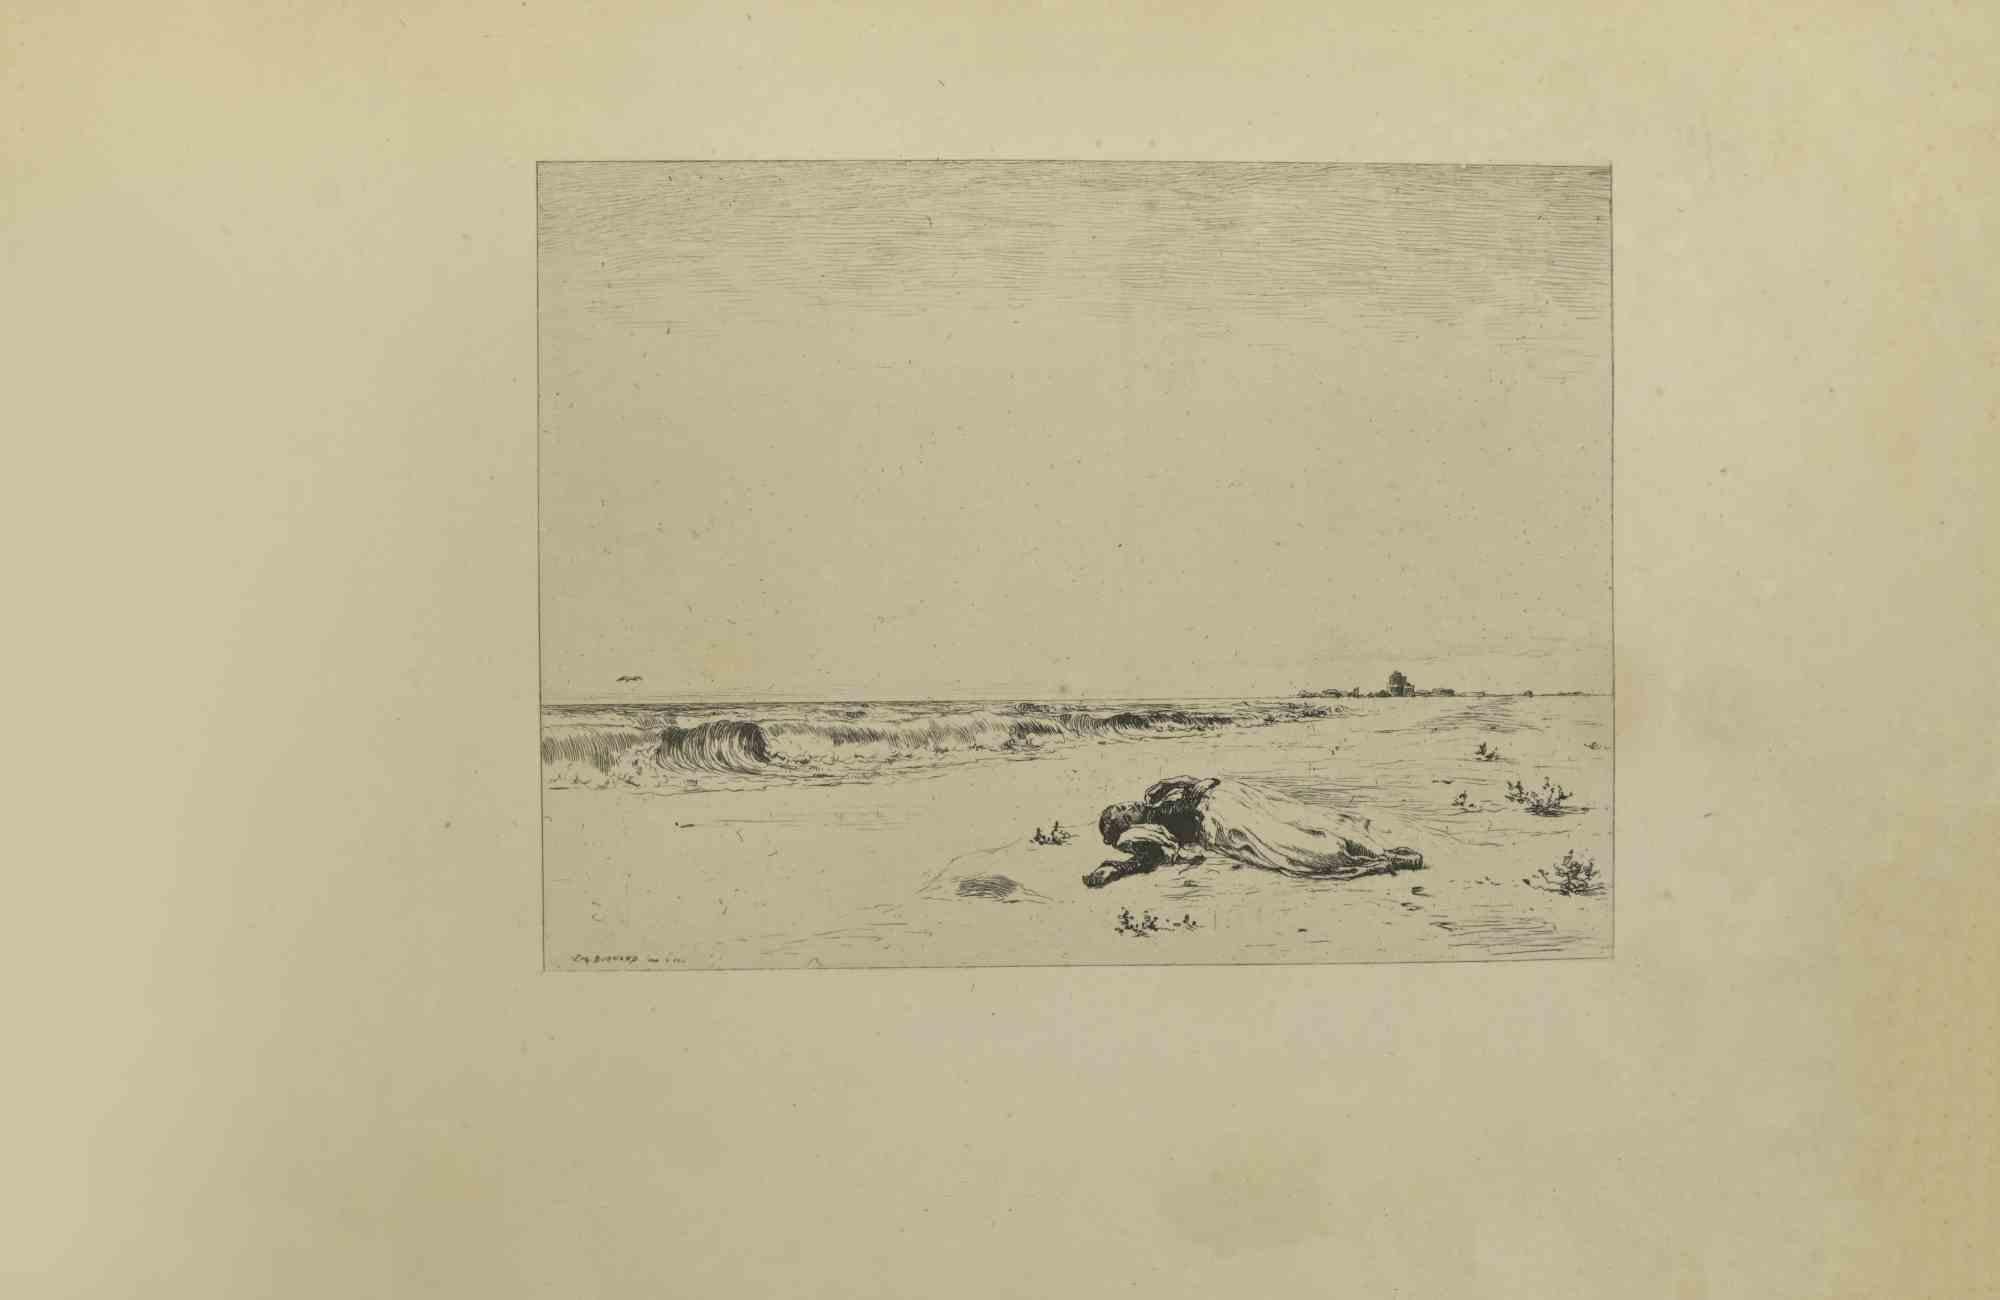 Der Tod neben dem Meer ist eine Radierung von Eugène Burnand  (1850-1921) im späten 19. Jahrhundert.

Signiert auf der Platte.

Guter Zustand mit Stockflecken.
 
Das Kunstwerk wird durch kurze und geschickte Striche realisiert, eine bewundernswerte